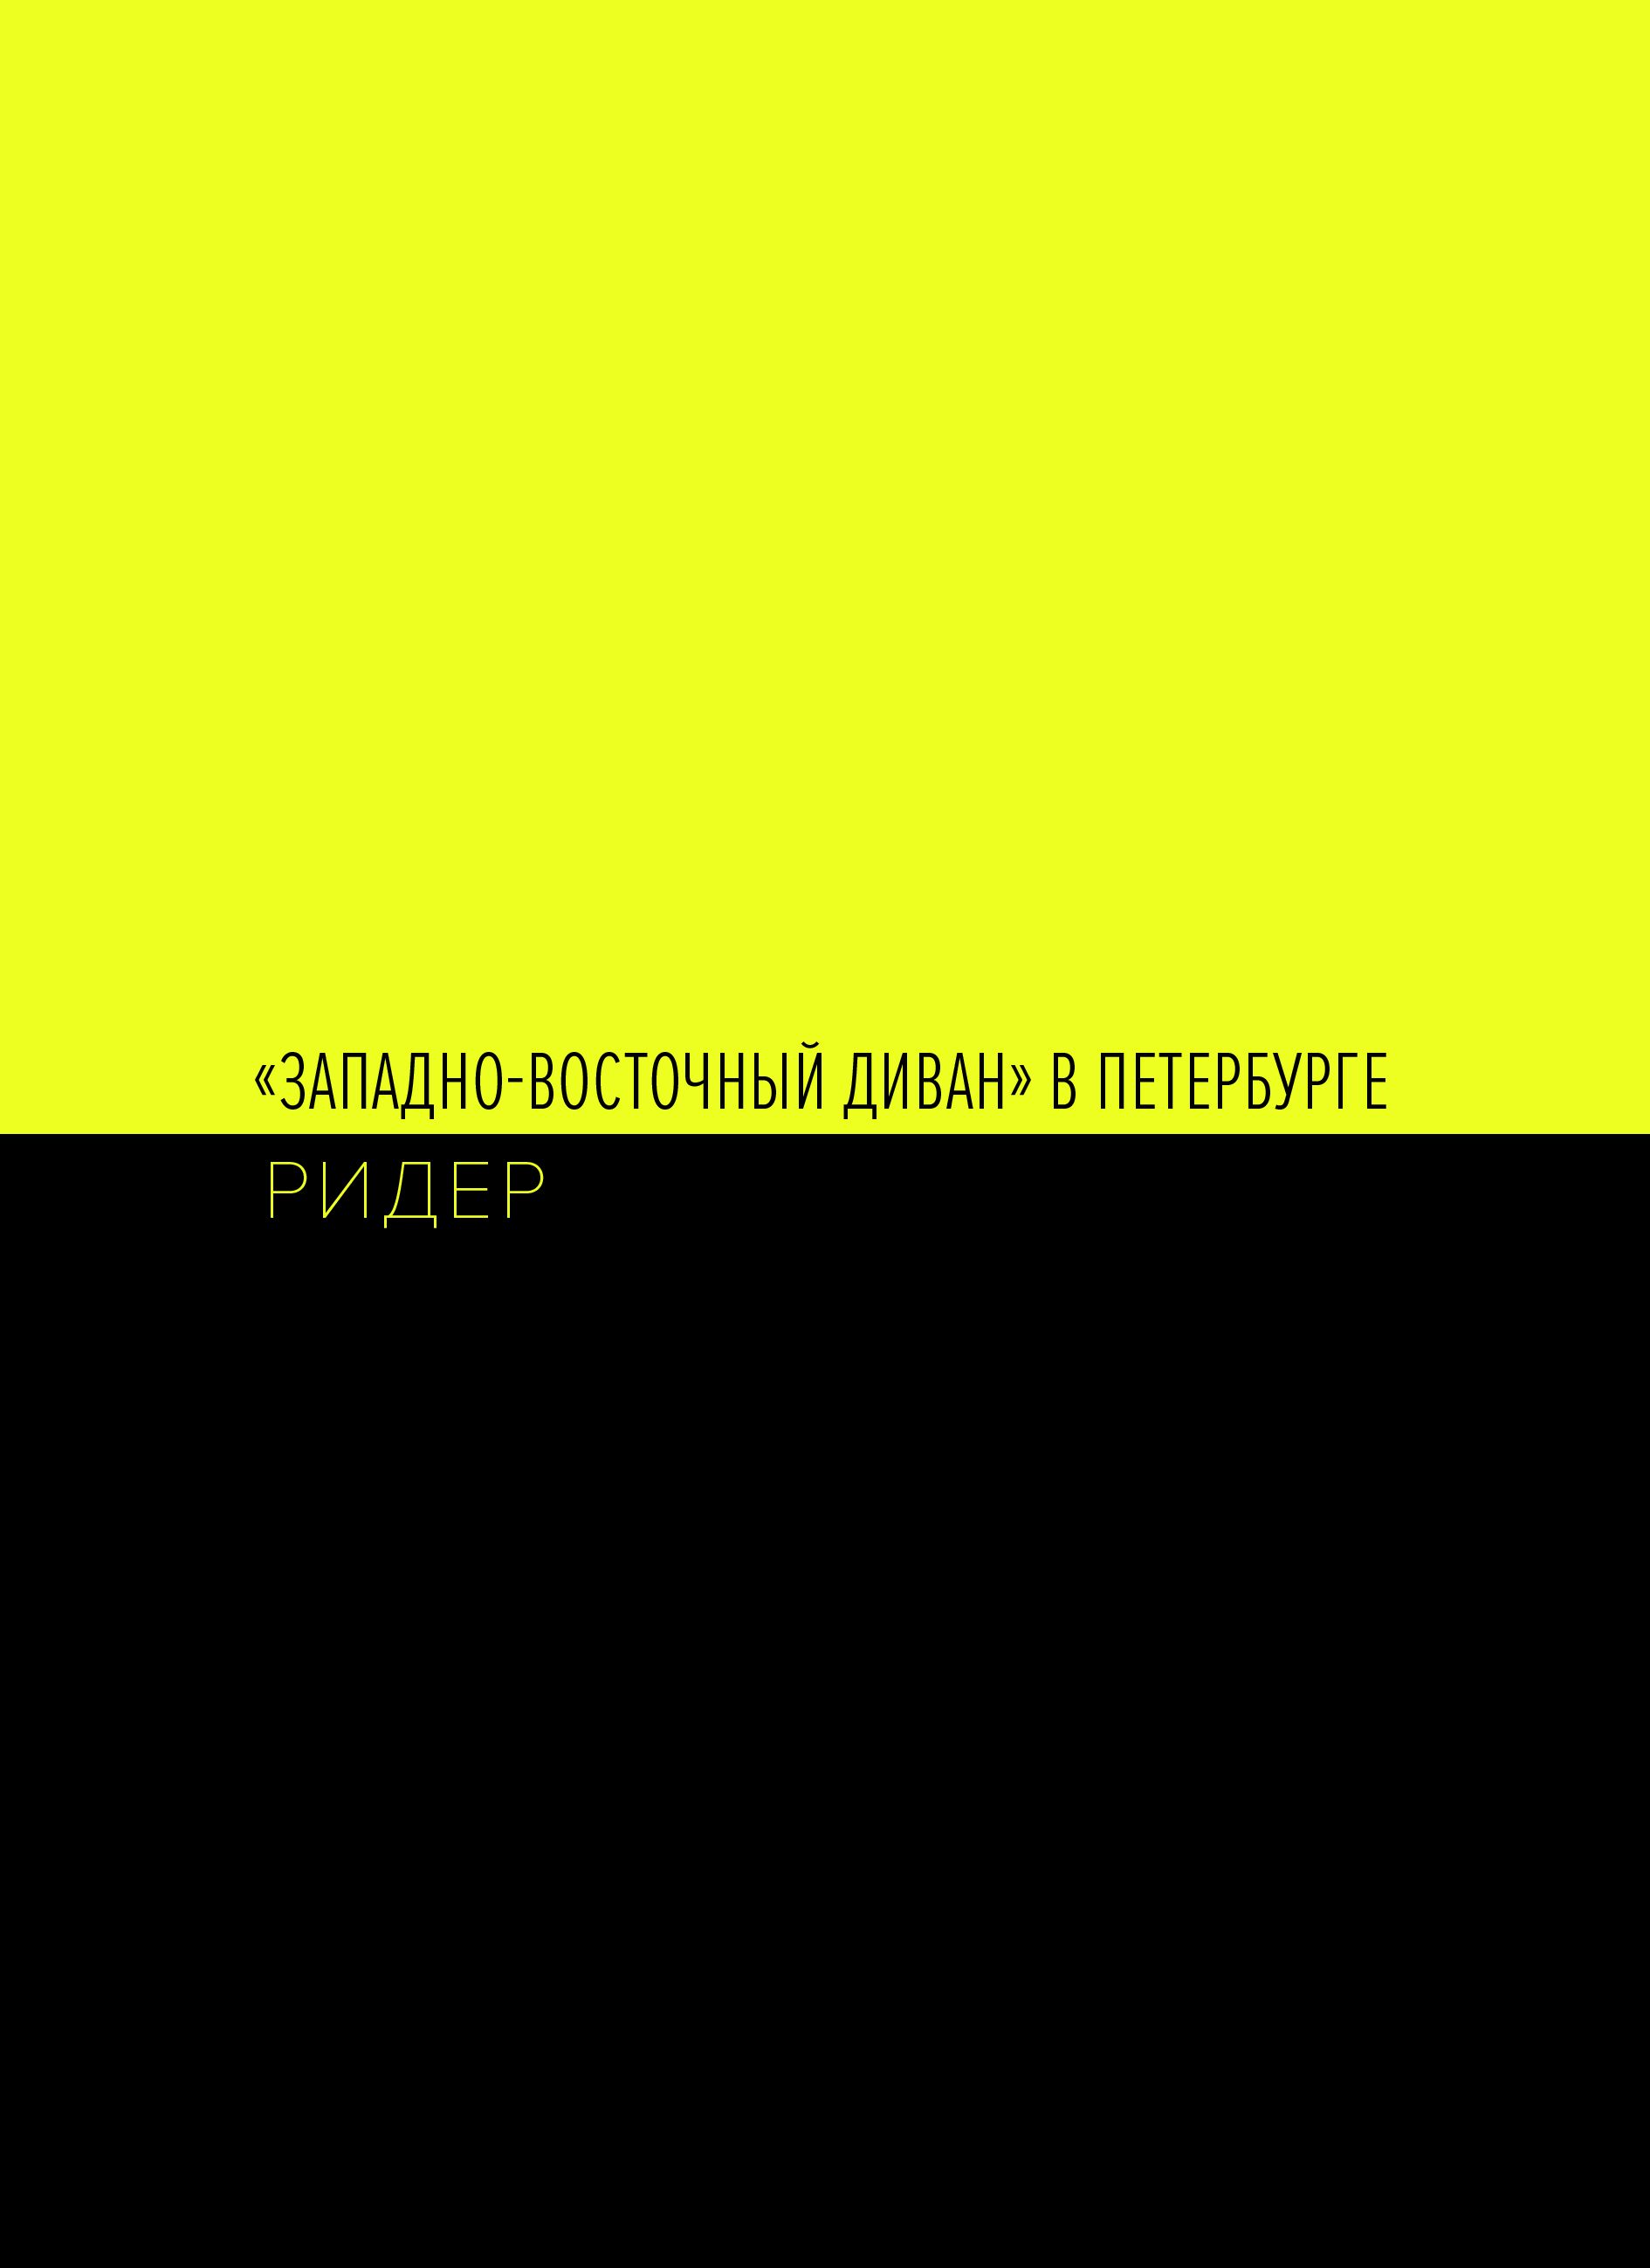 Андрей Шабанов (Документация  - 
                  16 x 22 см) "Западно-восточный диван" в Петербурге. Ридер